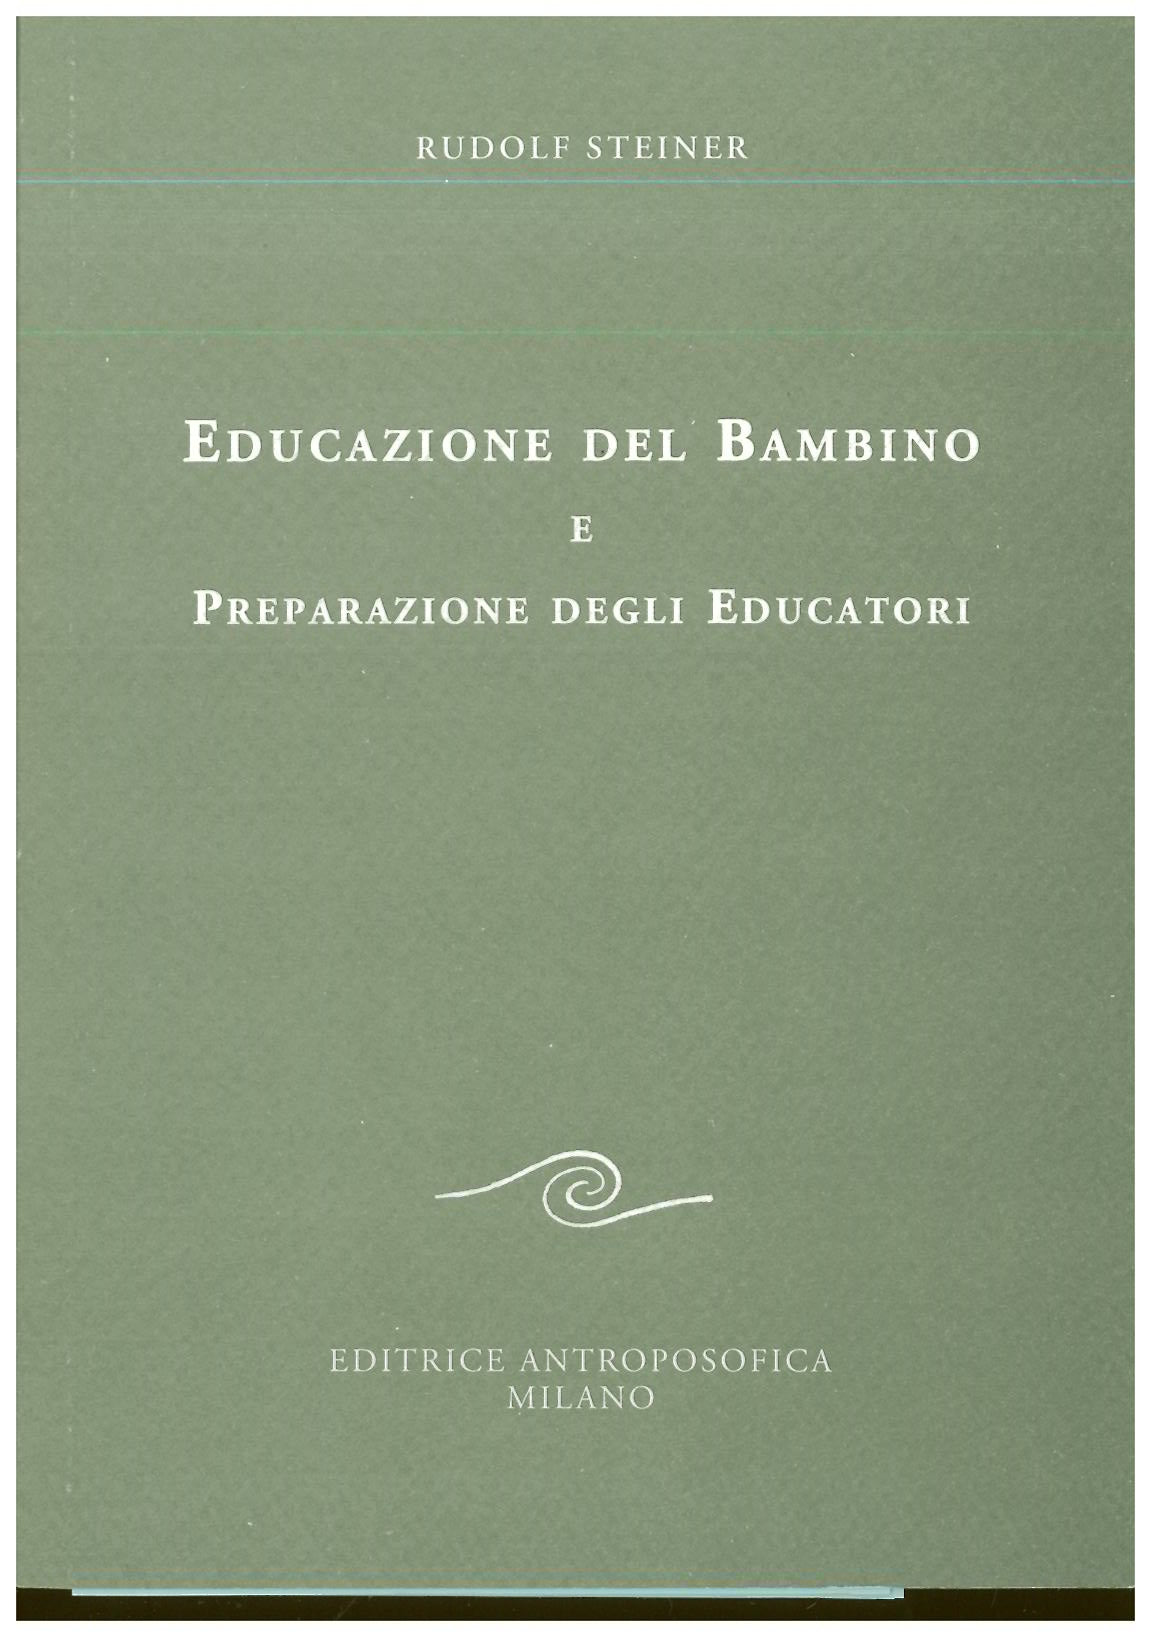 Educazione del bambino e preparazione degli educatori - Rudolf Steiner